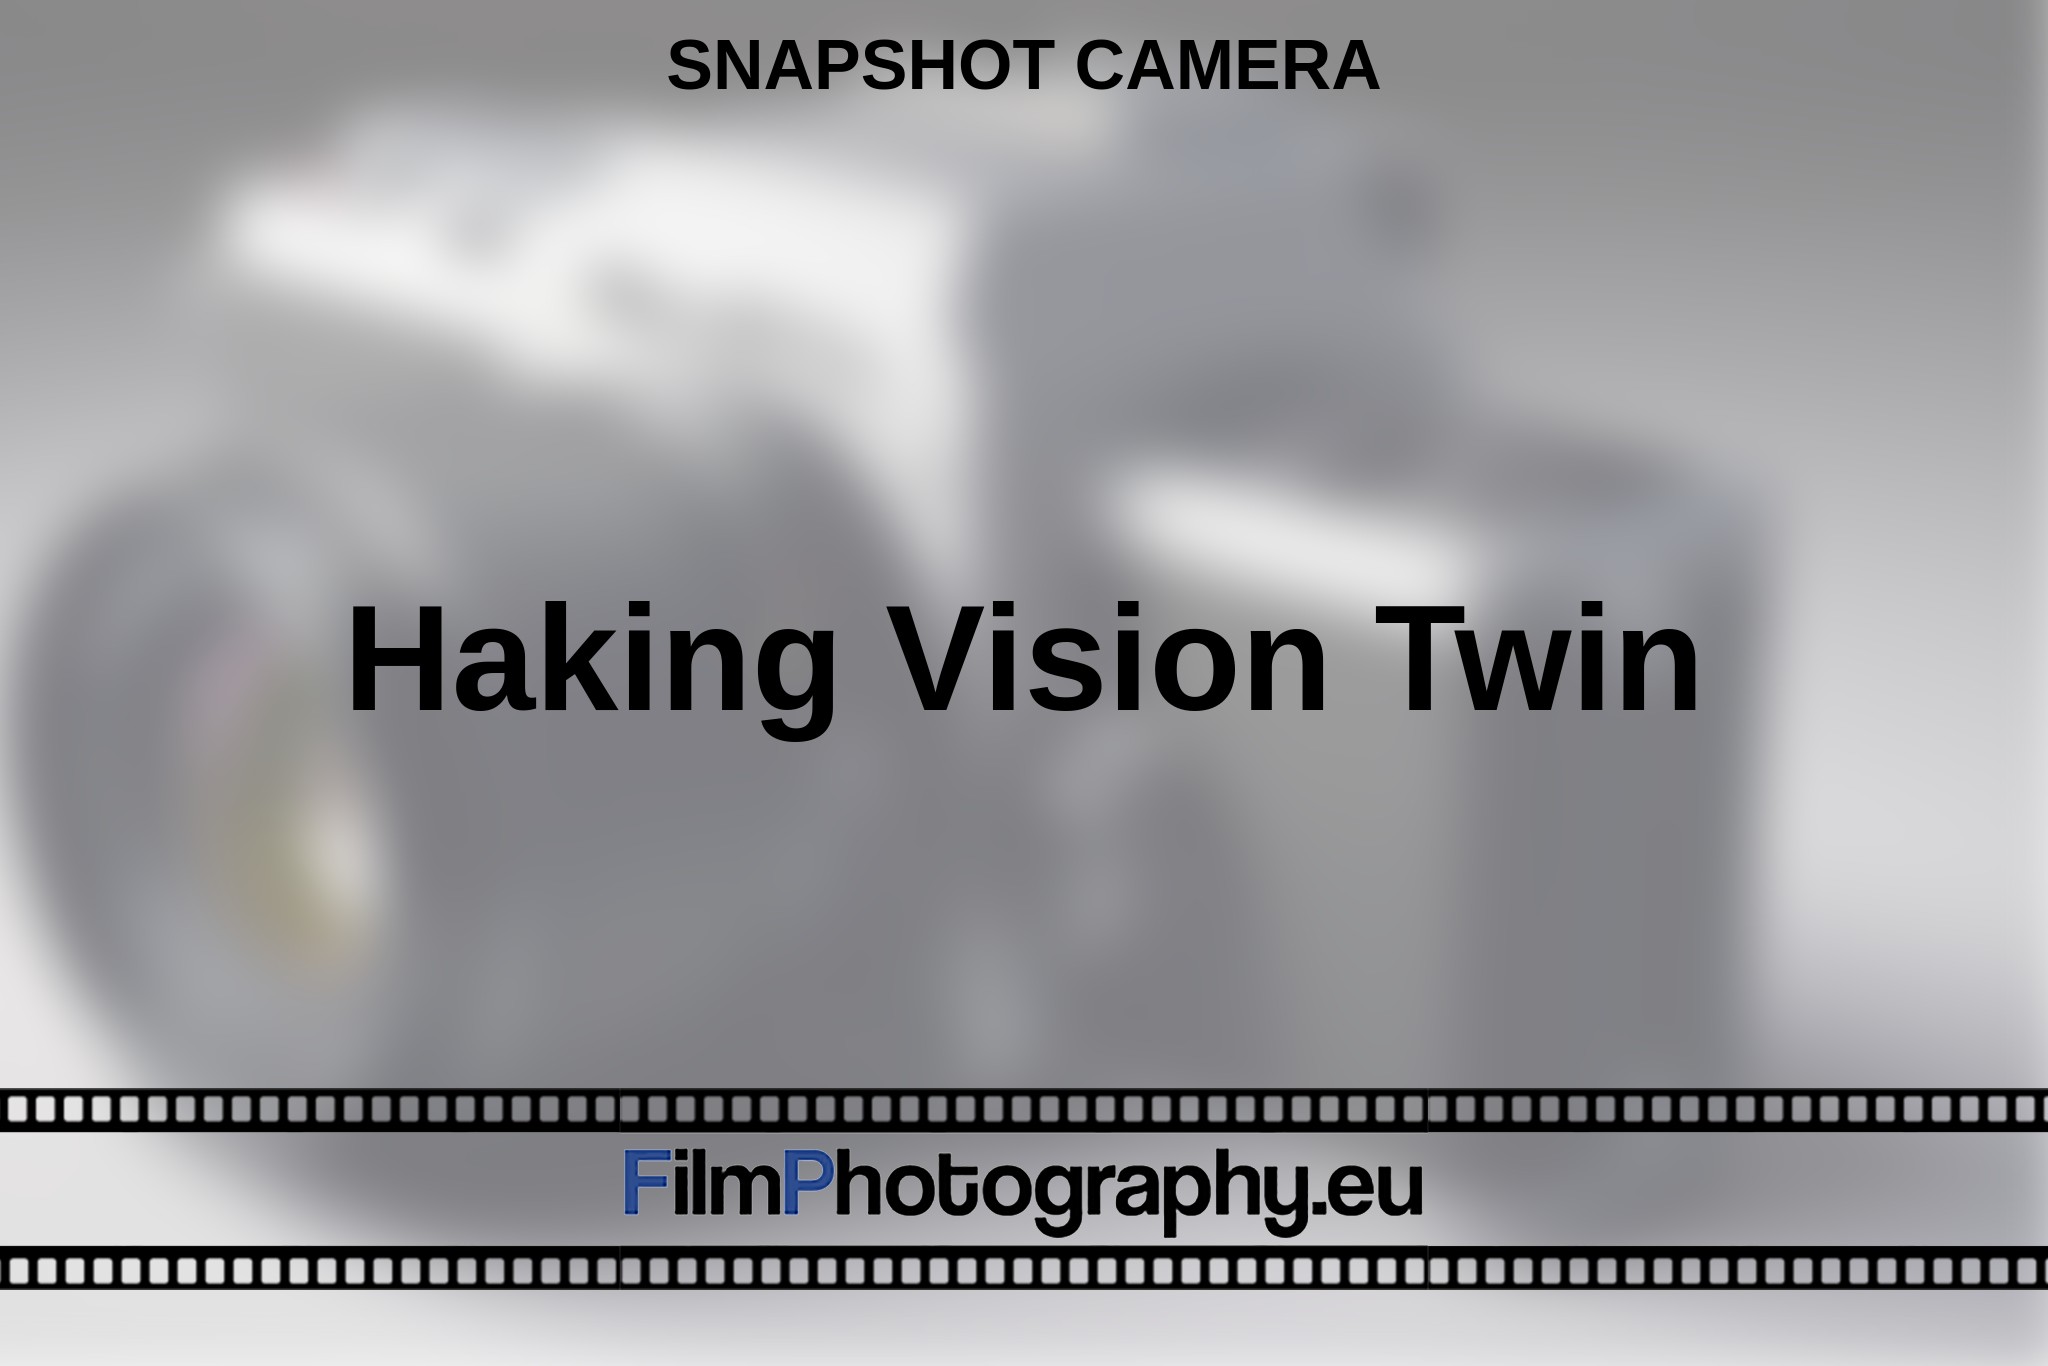 haking-vision-twin-snapshot-camera-en-bnv.jpg